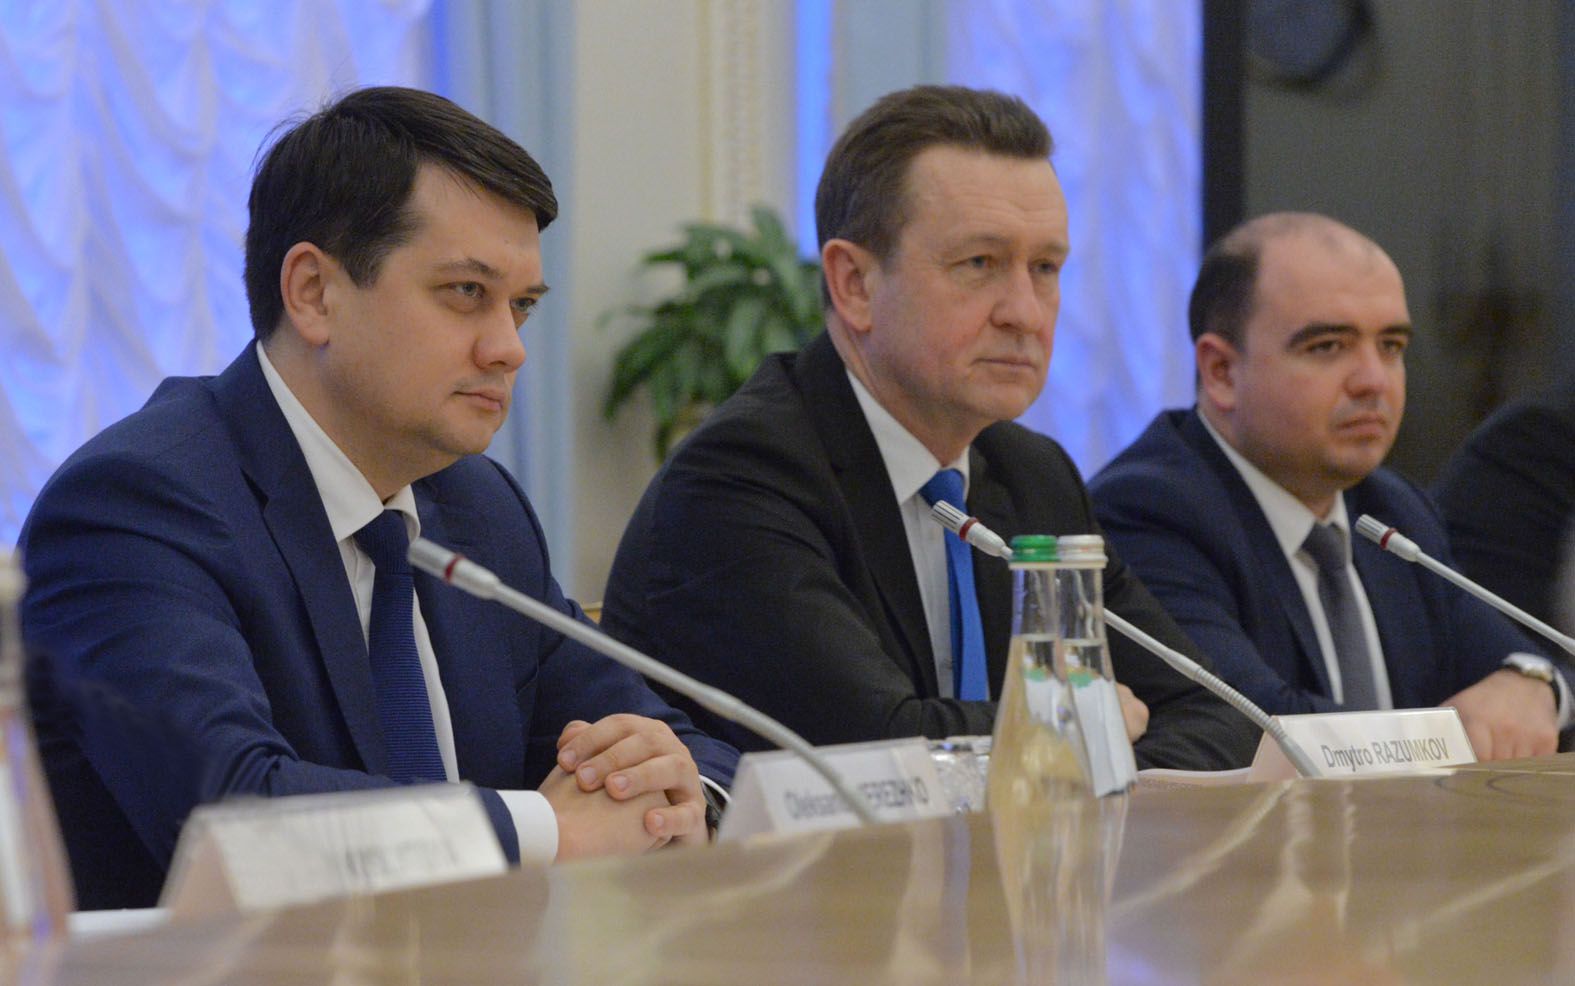 Дмитро Разумков: «Сподіваємося, що ОБСЄ зіграє ключову роль у забезпеченні реального перемир’я на сході»